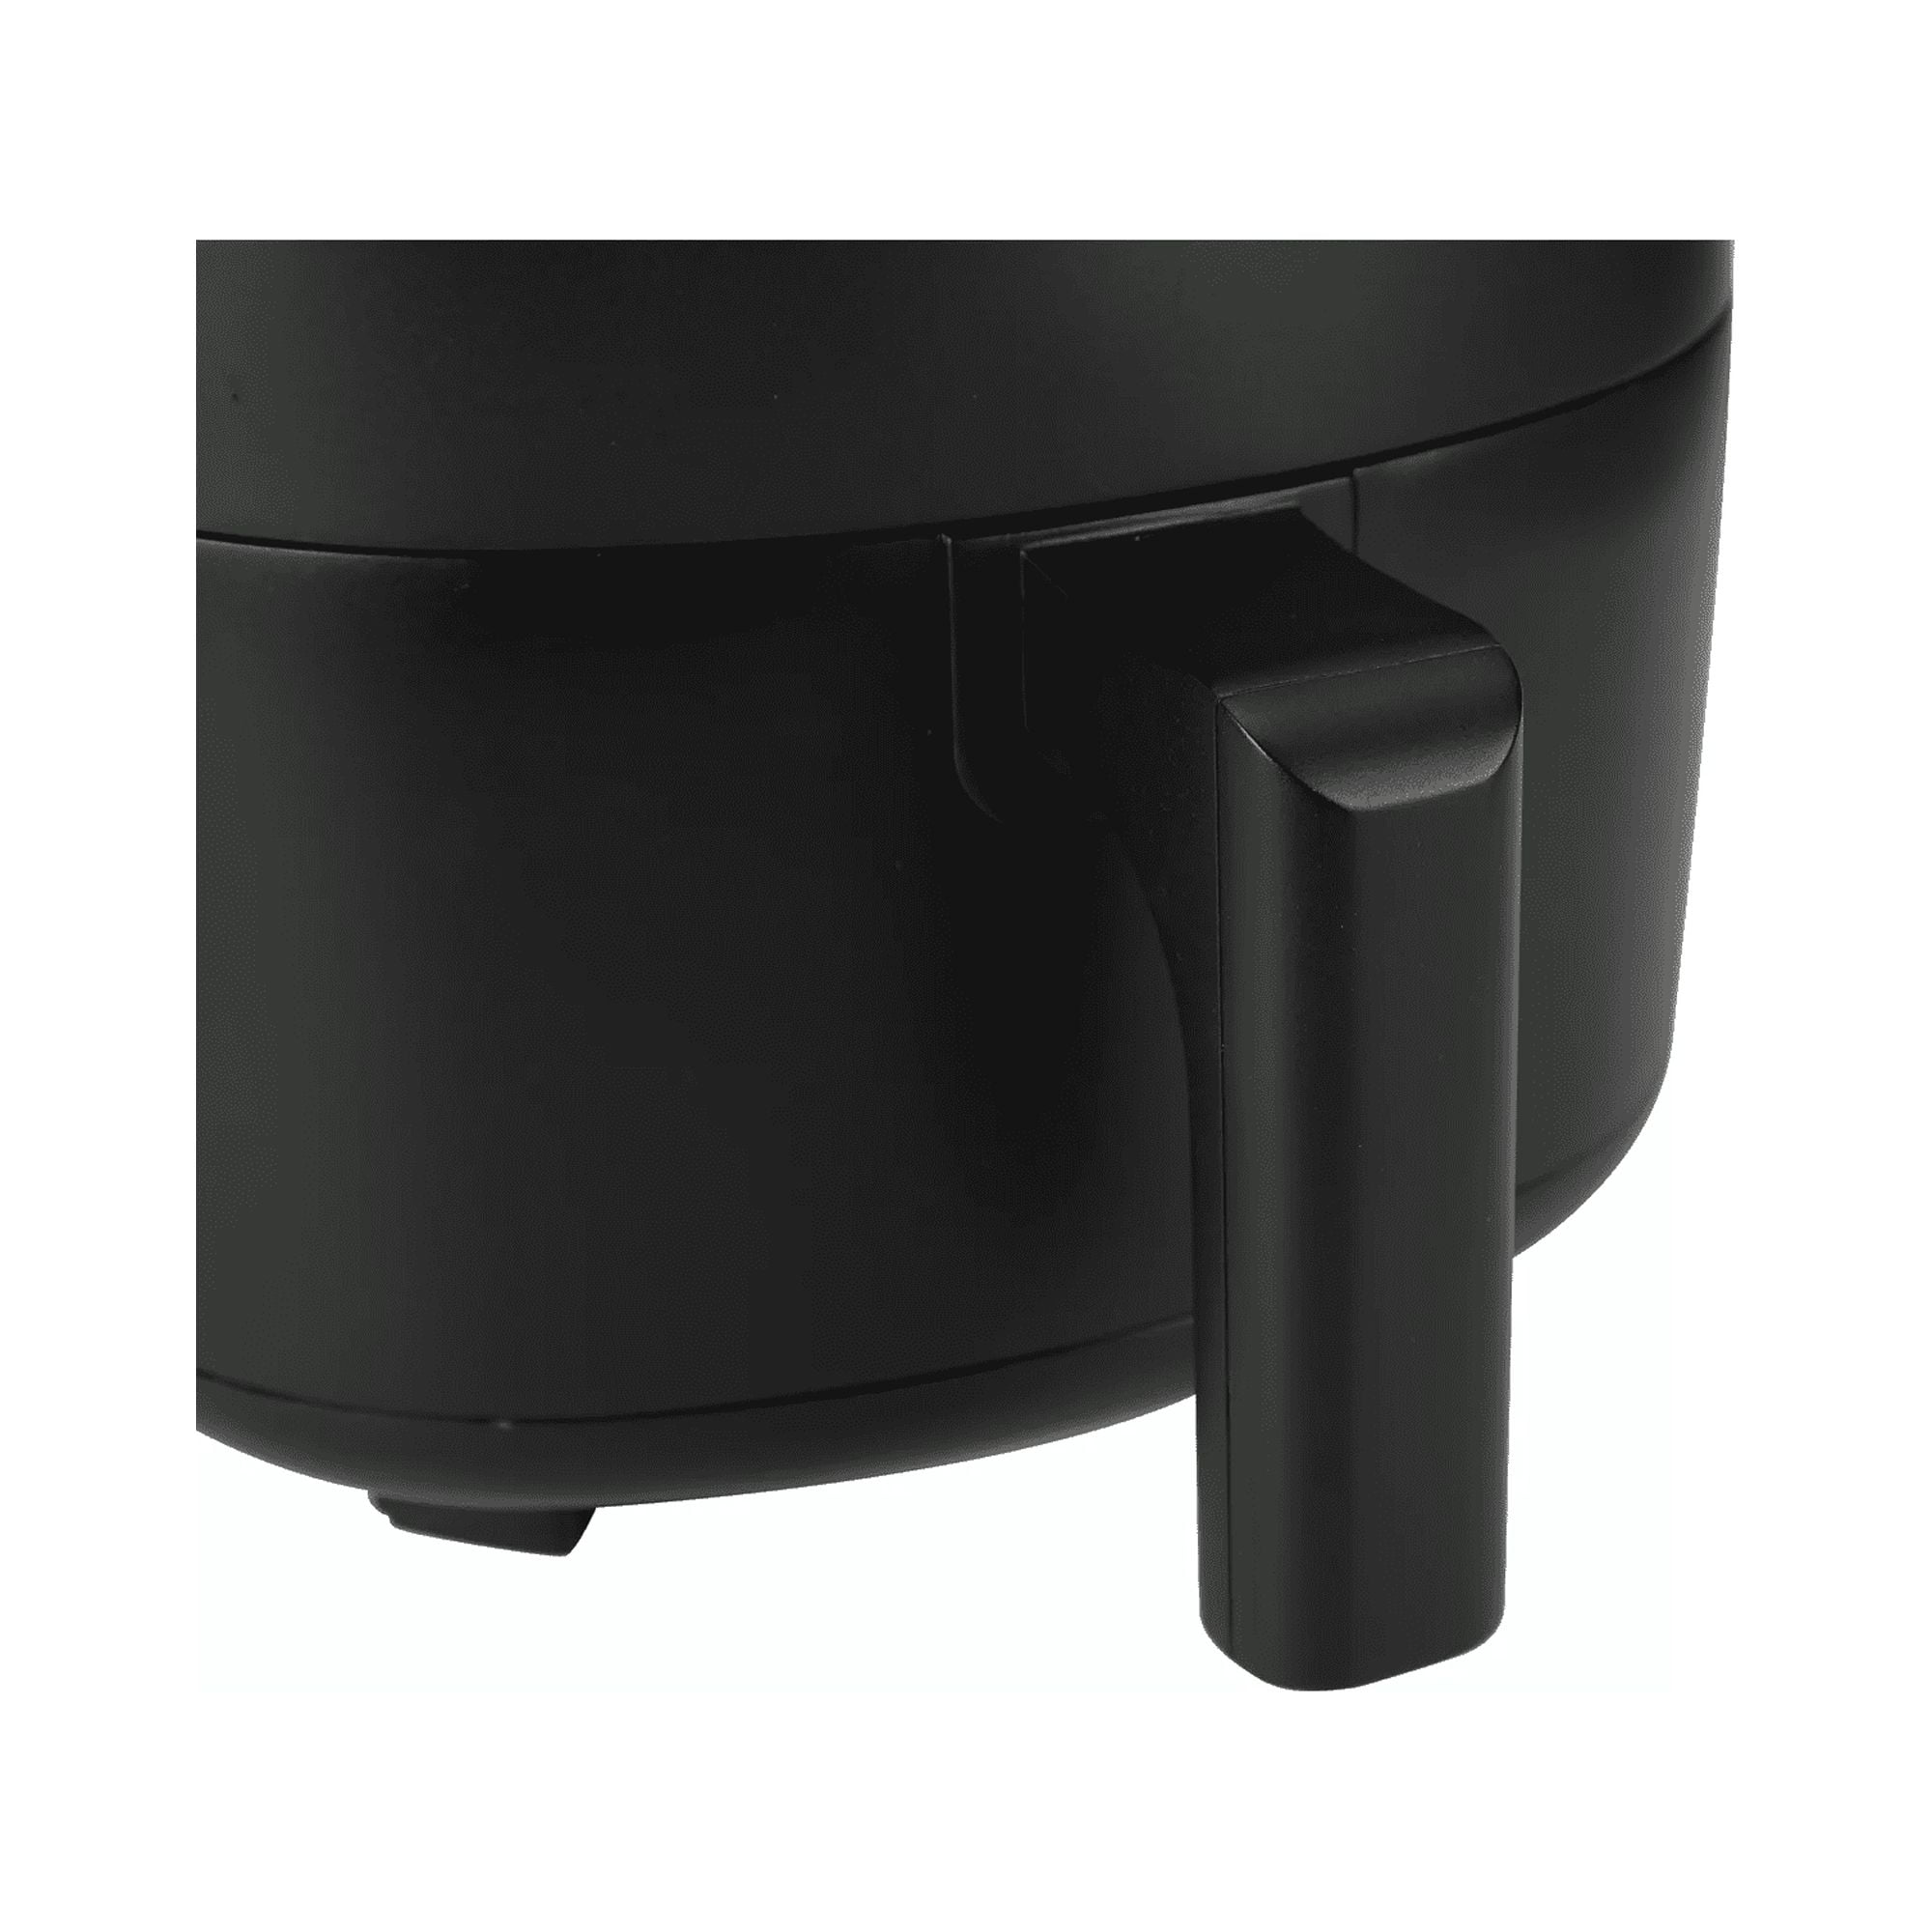 Mainstays Non-Stick Dishwasher Safe Basket Air Fryer - Black - 2.2 qt